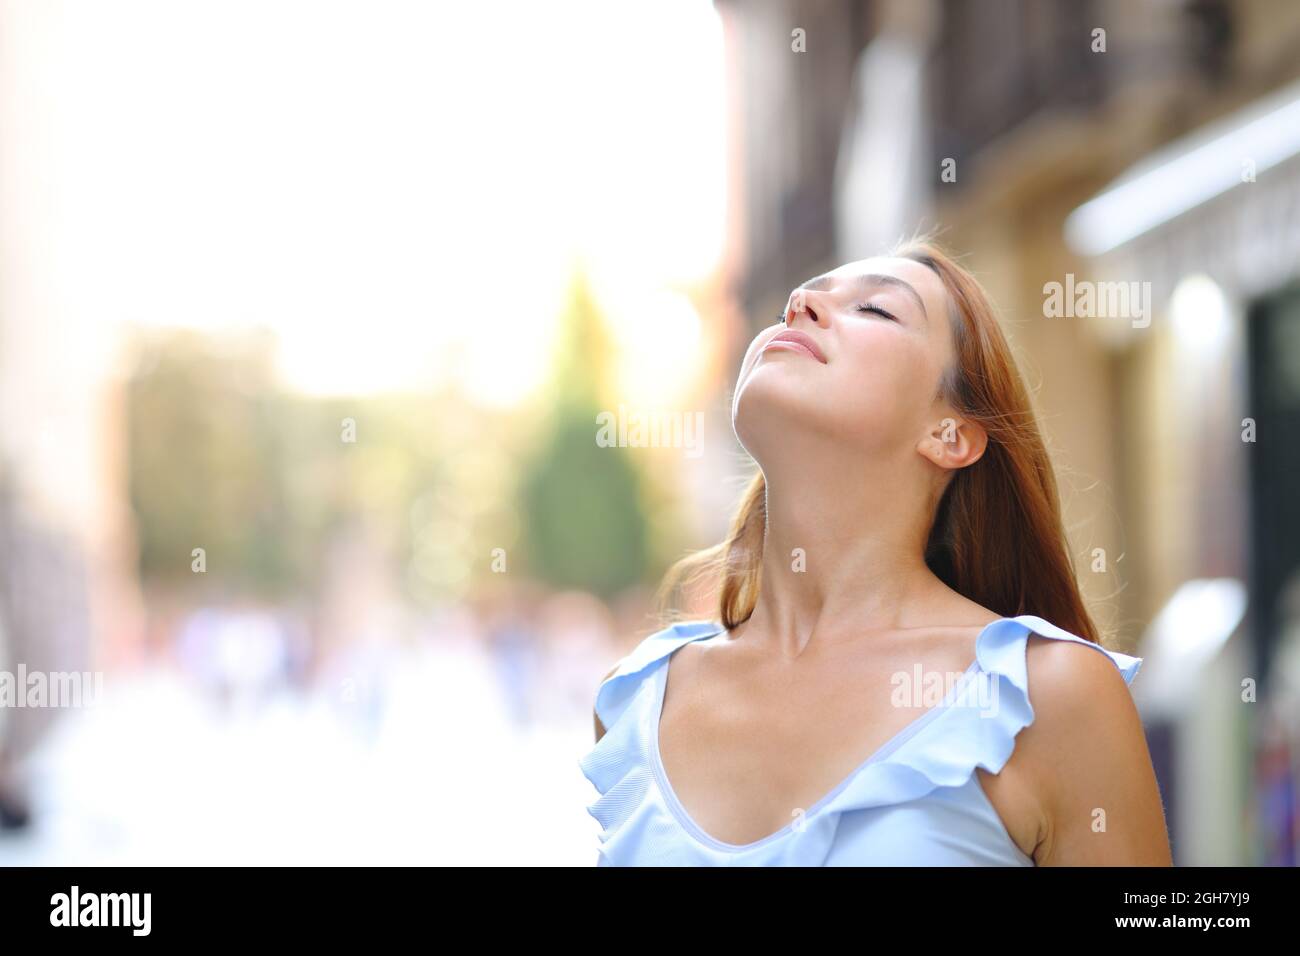 Une femme détendue respire de l'air frais dans la rue Banque D'Images